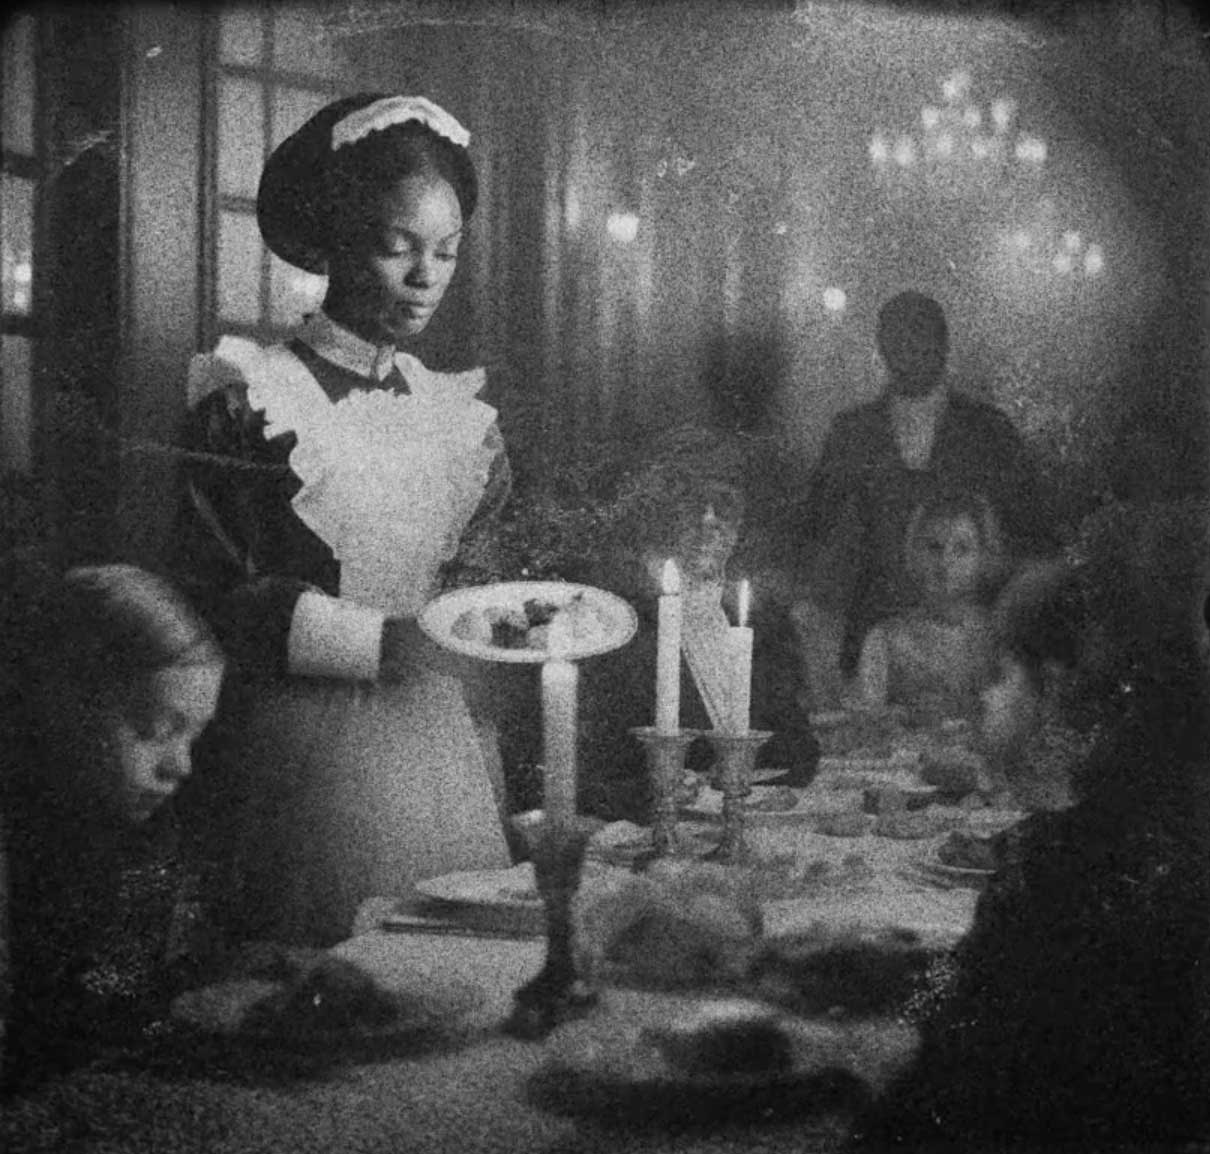 Film still of woman serving dinner table. 